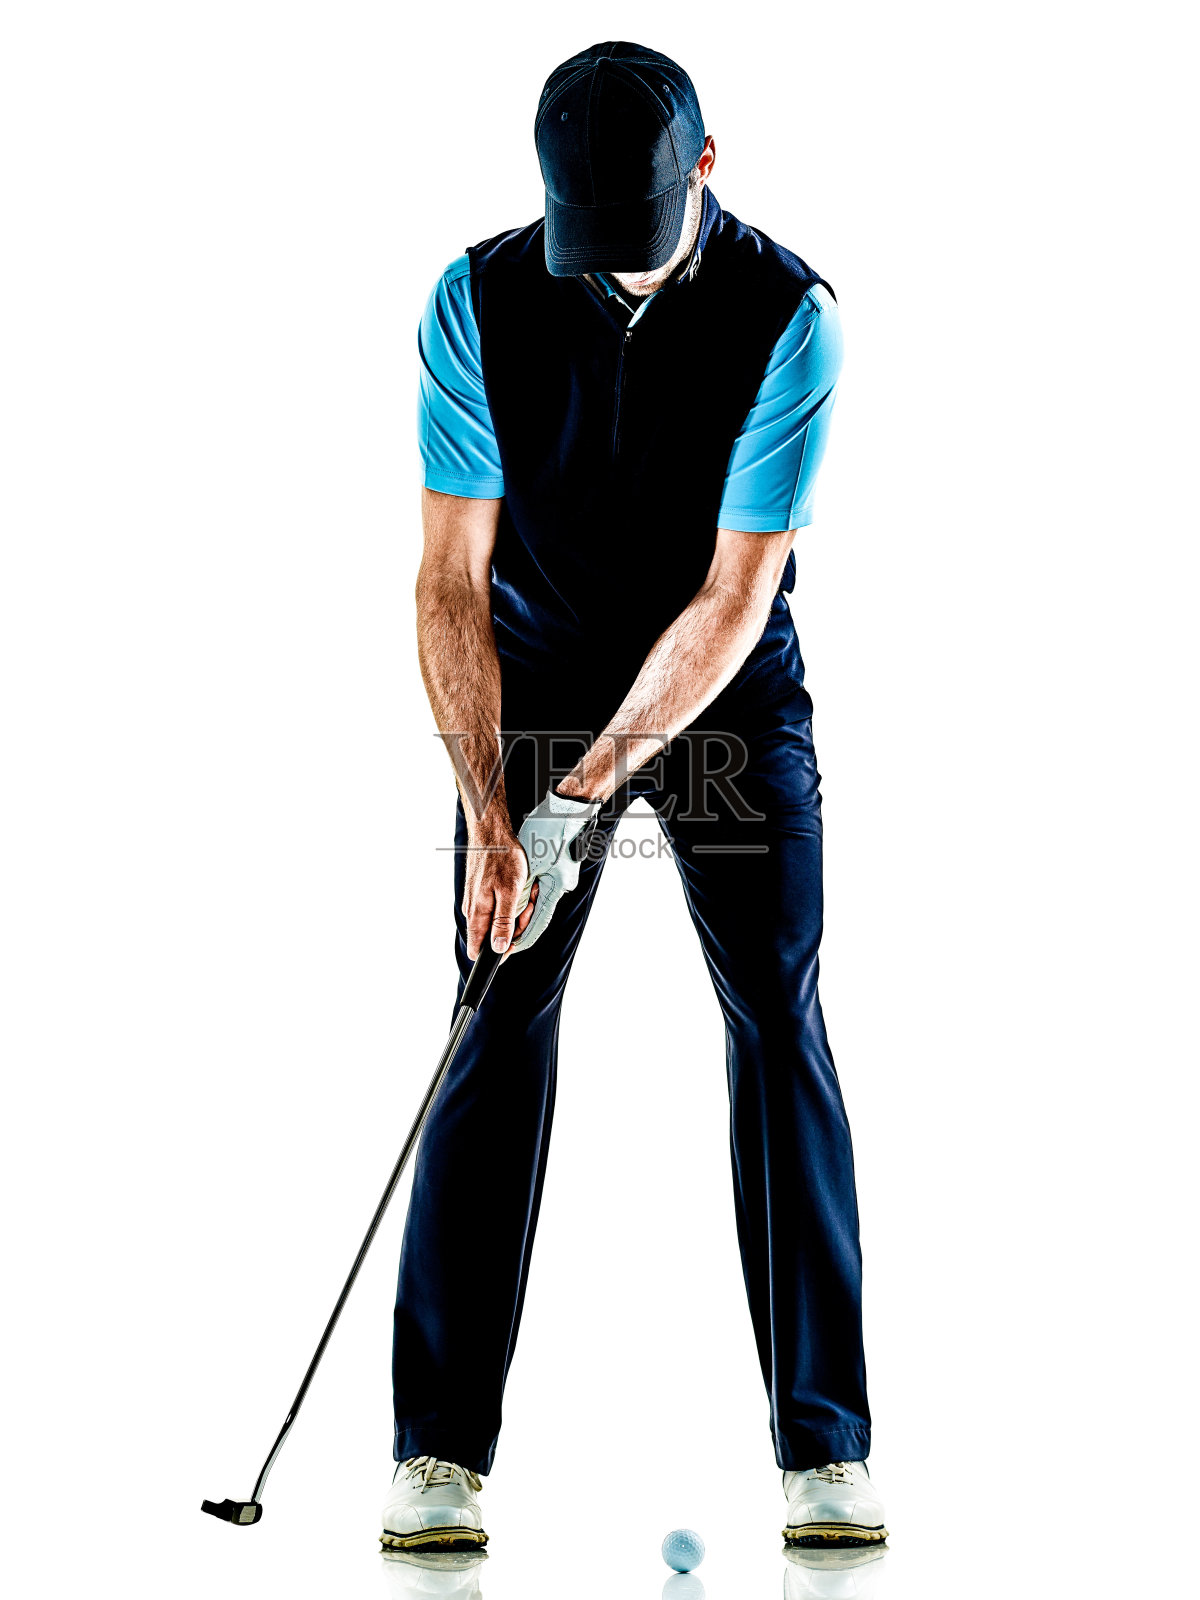 男子高尔夫球手高尔夫孤立的背景照片摄影图片